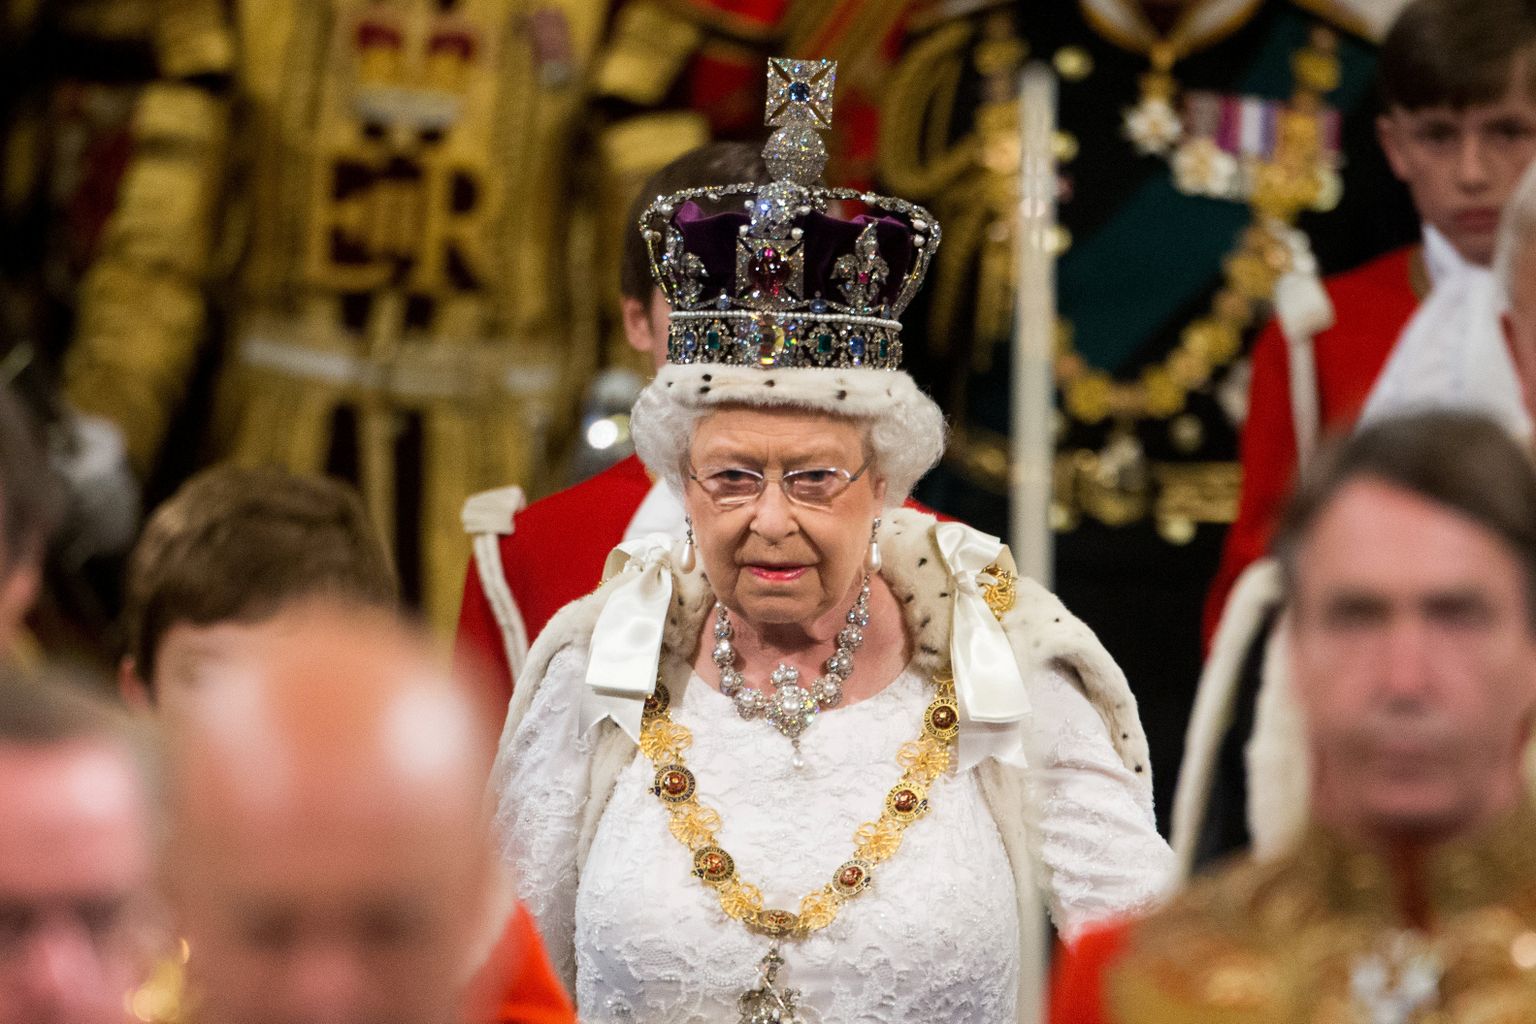 Briti kuninganna Elizabeth II 24. juunil 2020 parlamendi avatseremoonial